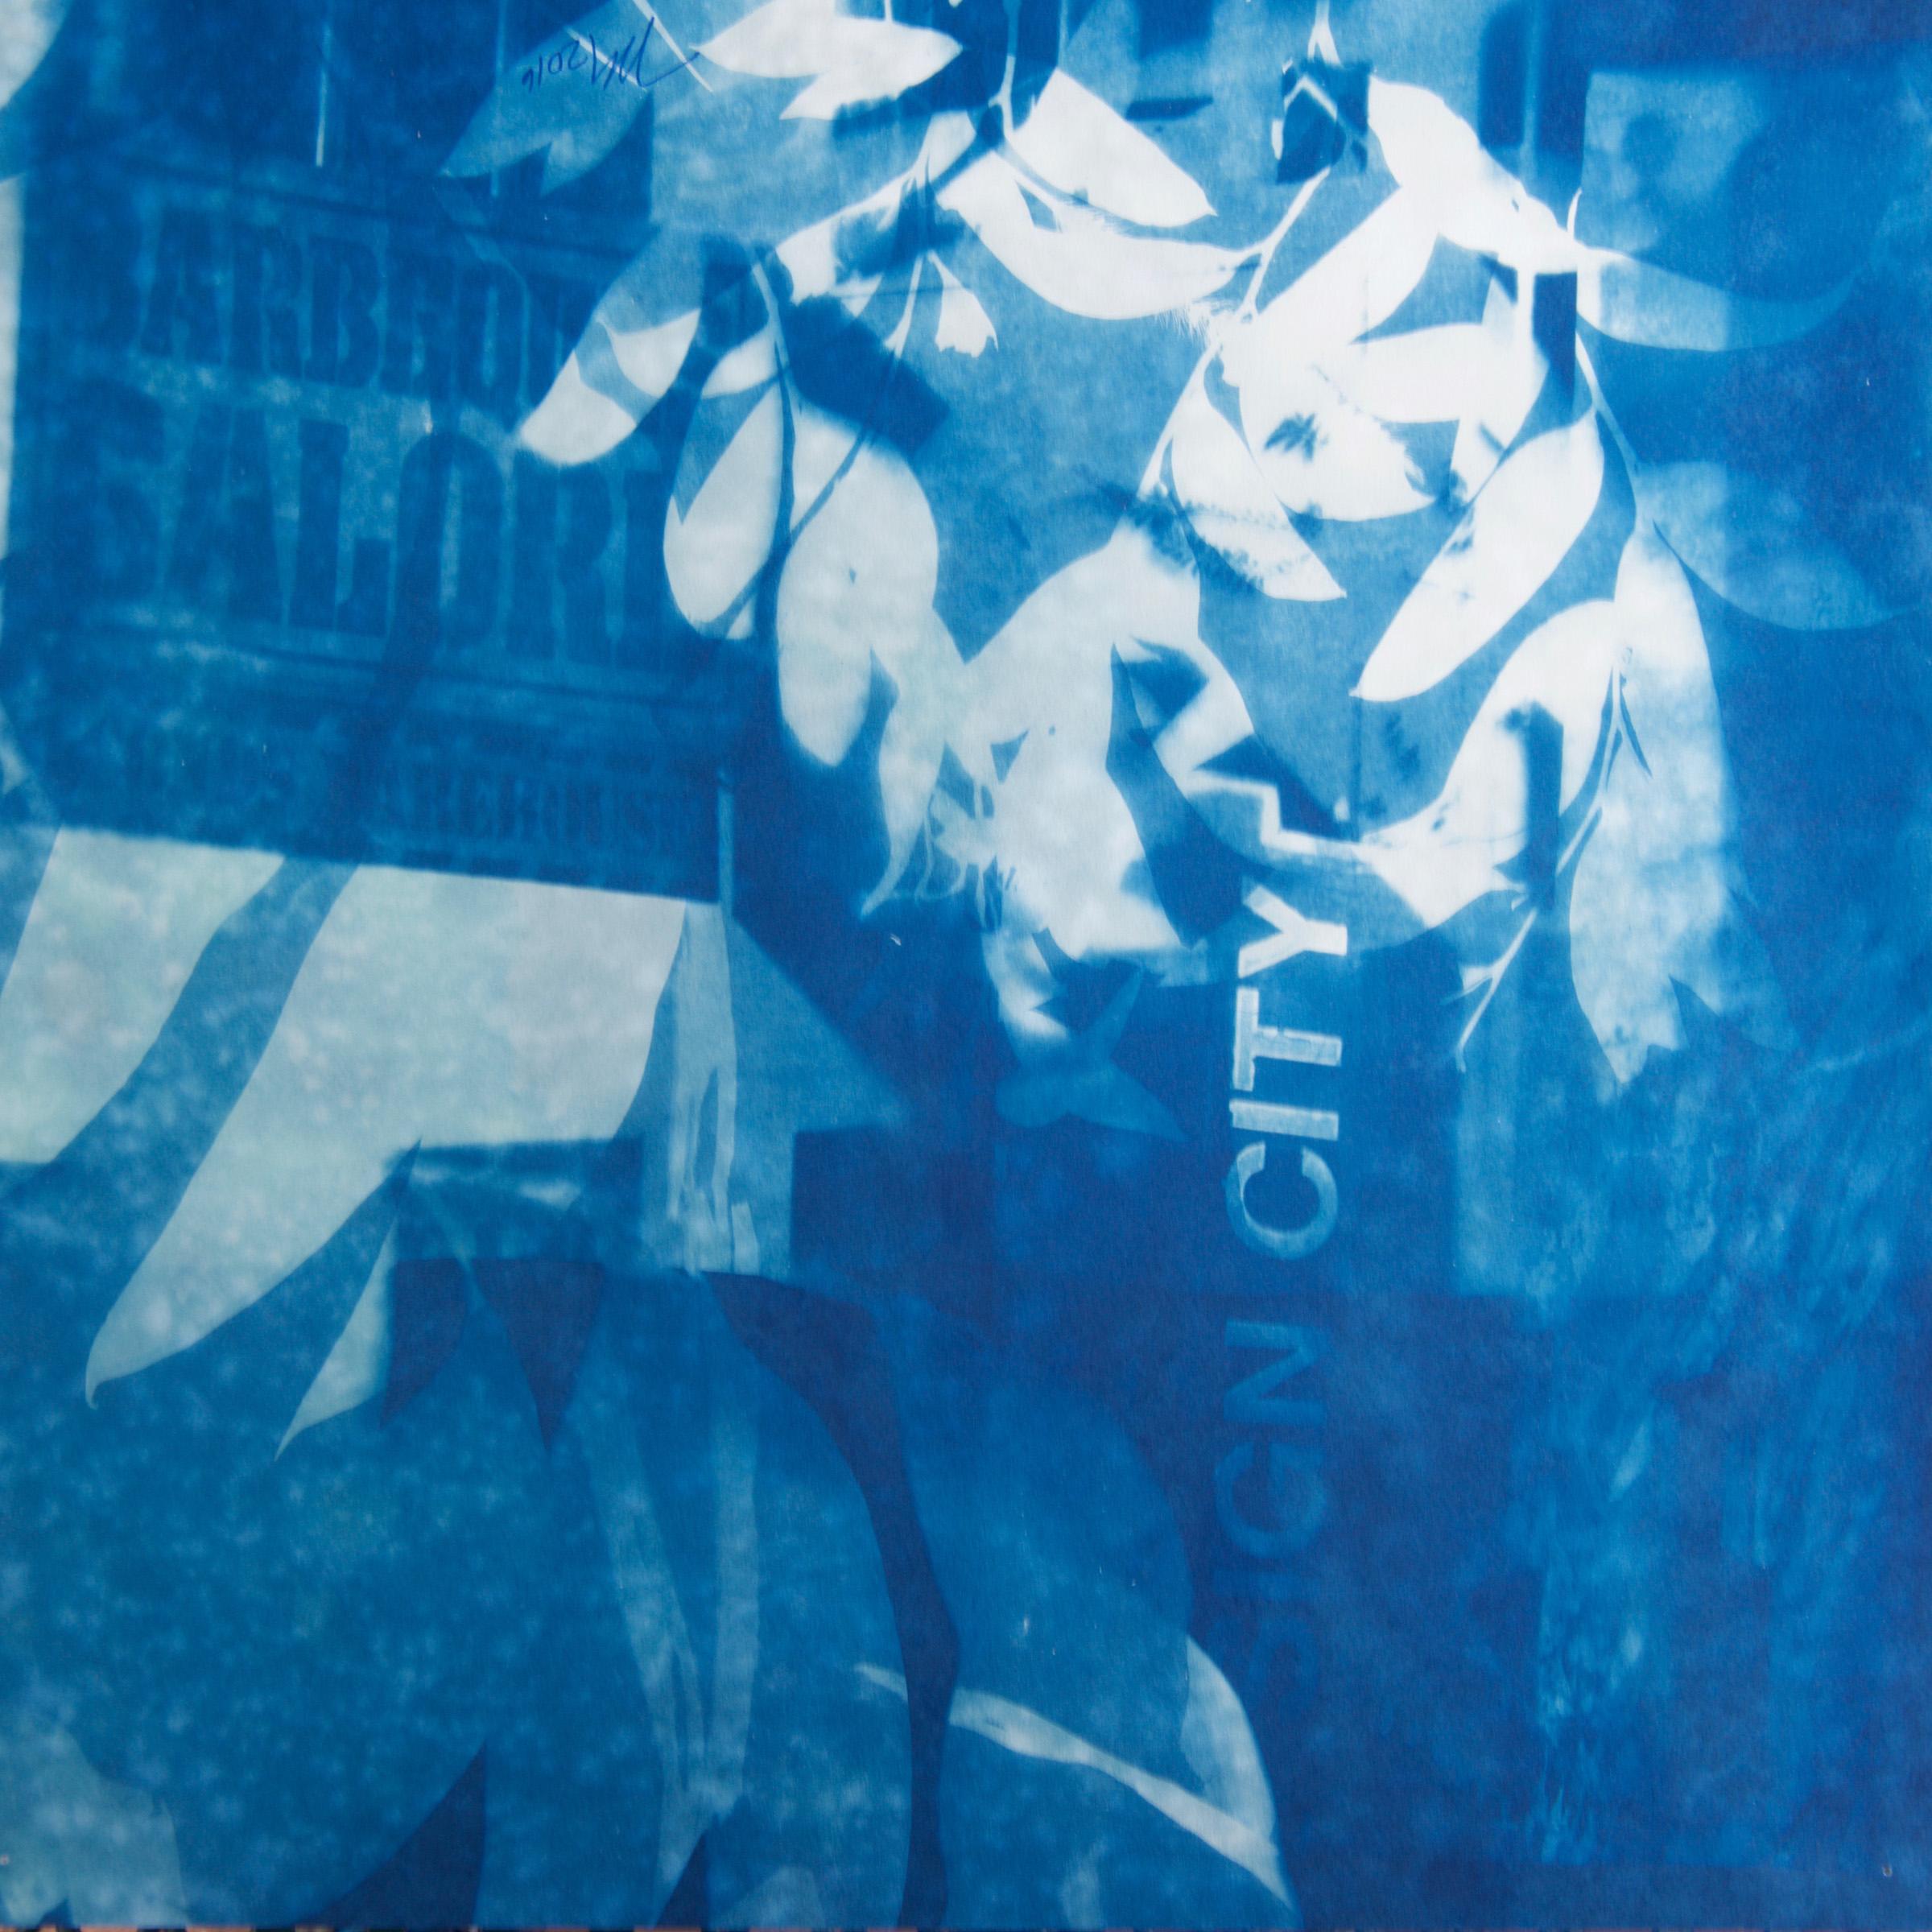 "Sign City Galore", zeitgenössisch, Blätter, Gebäude, blau, Cyanotypie, Fotografie – Photograph von Marie Craig